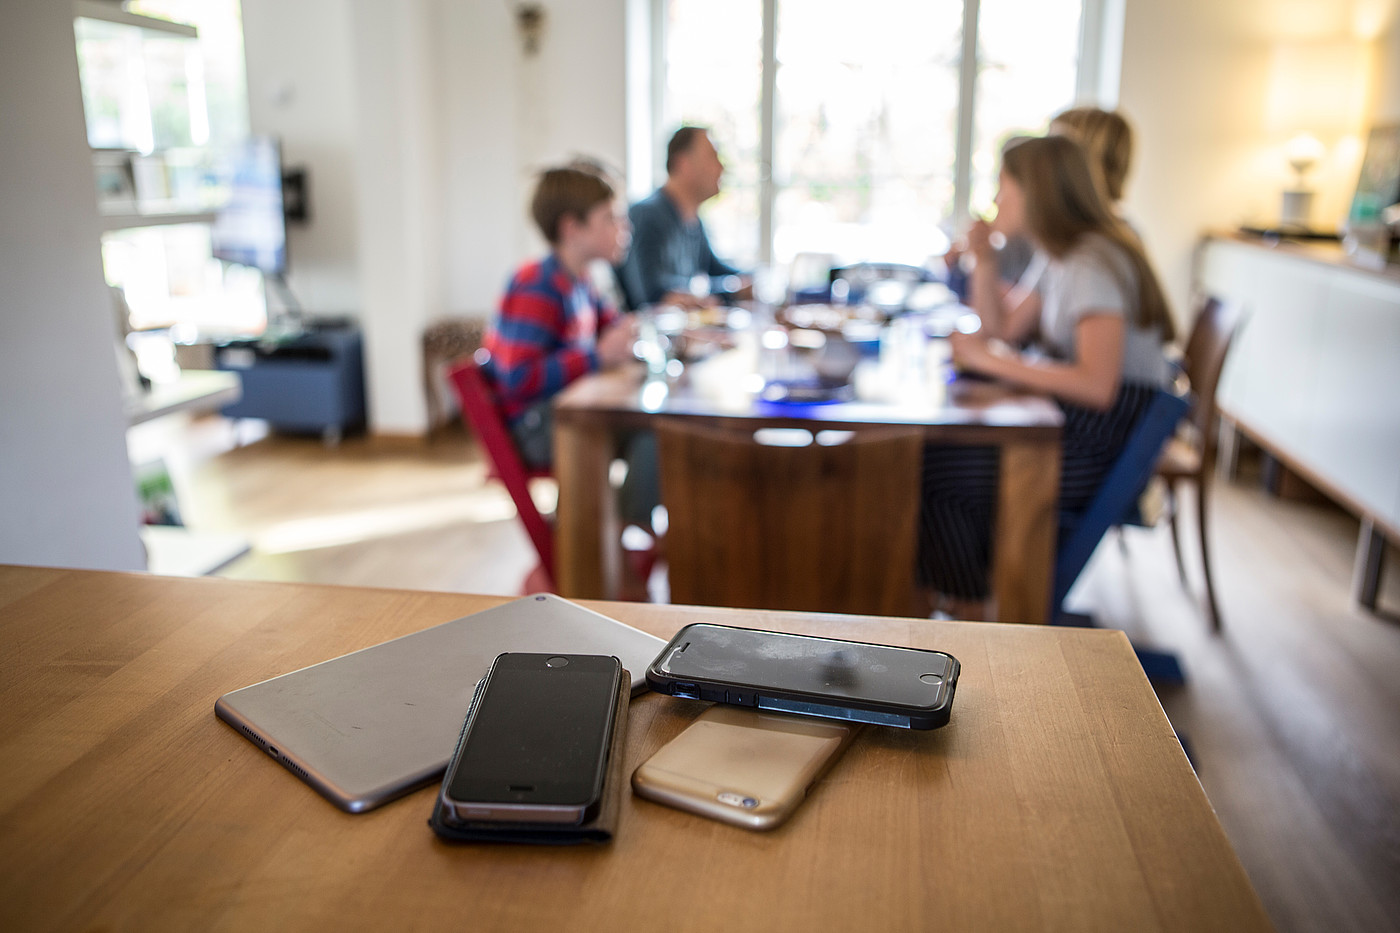 Les smartphones sont éloignés de la table à manger pendant que la famille prend son repas.